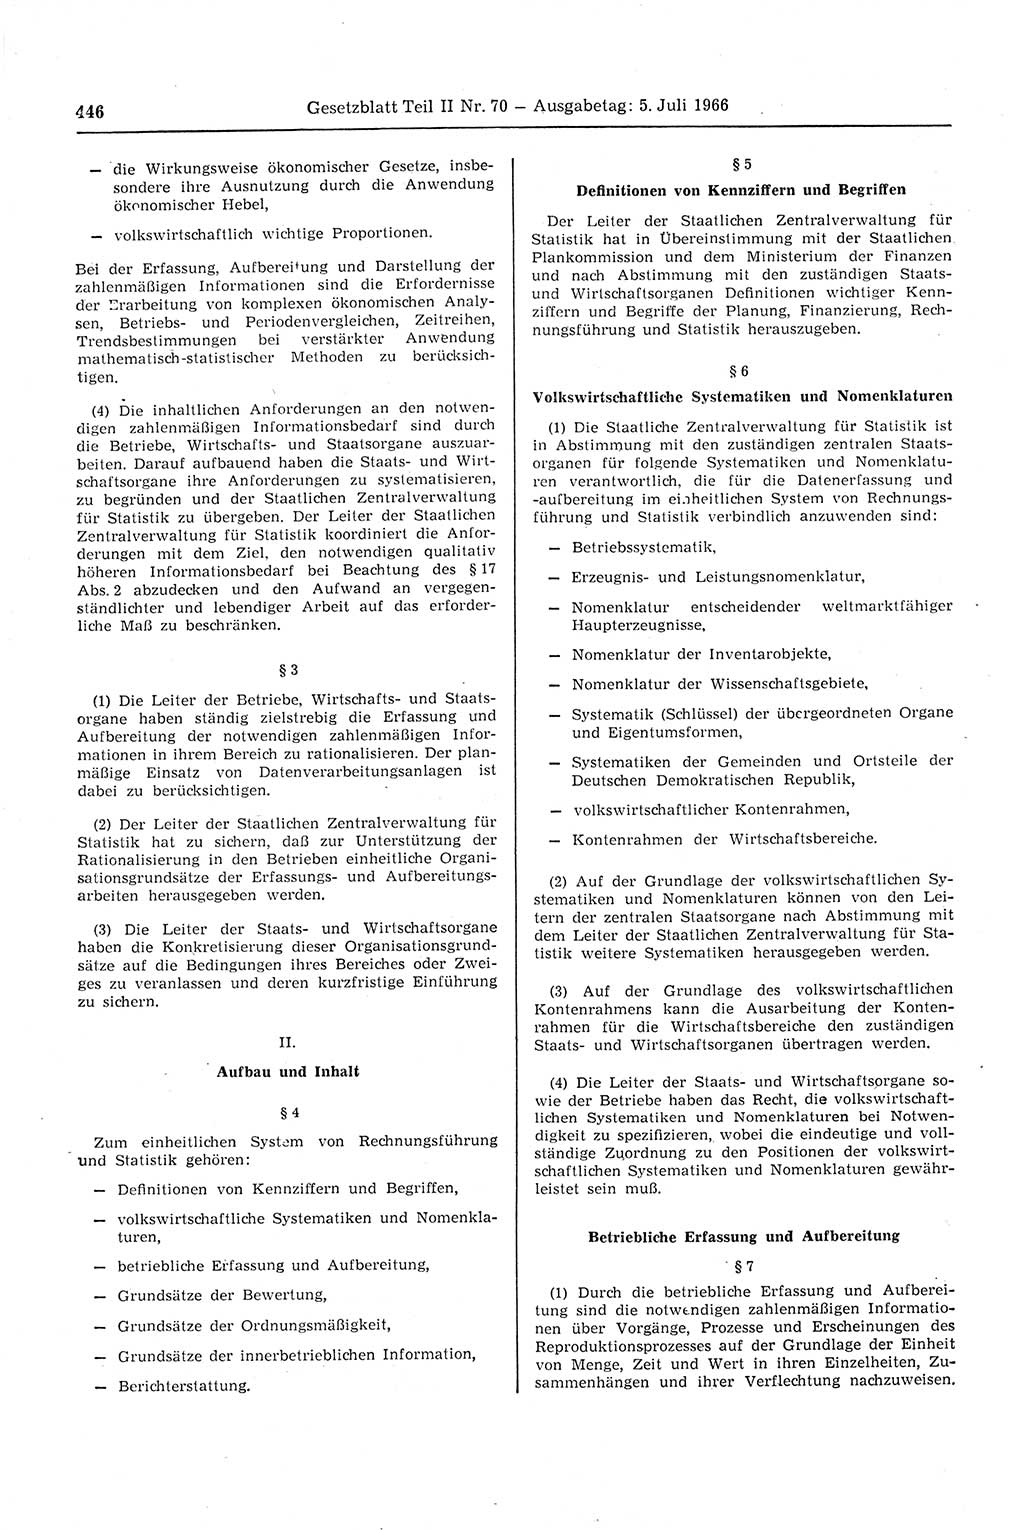 Gesetzblatt (GBl.) der Deutschen Demokratischen Republik (DDR) Teil ⅠⅠ 1966, Seite 446 (GBl. DDR ⅠⅠ 1966, S. 446)